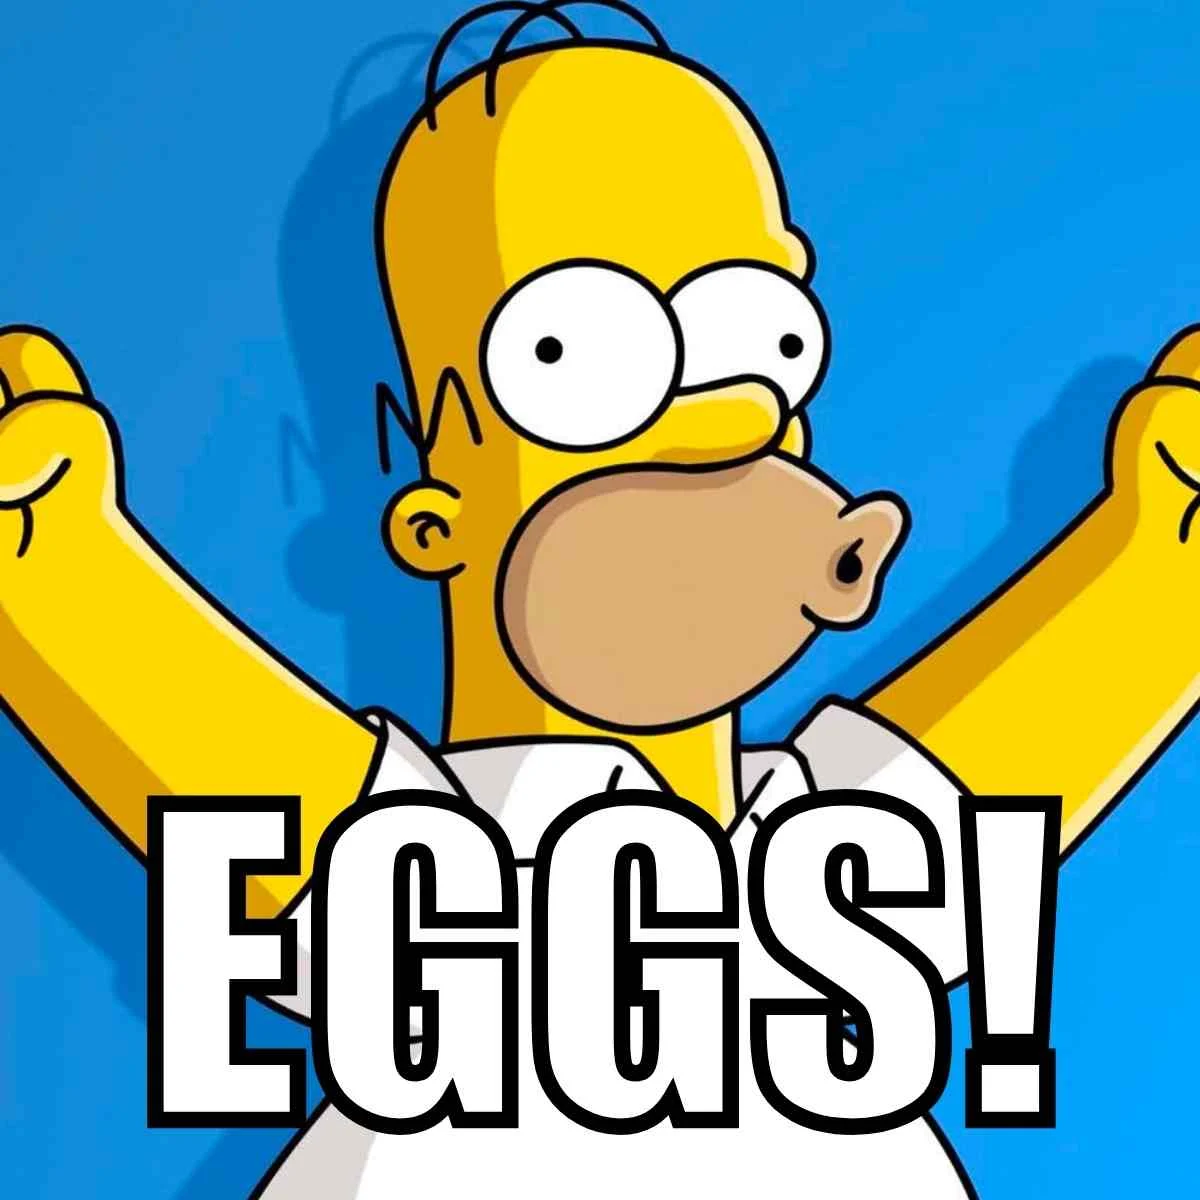 eggs meme